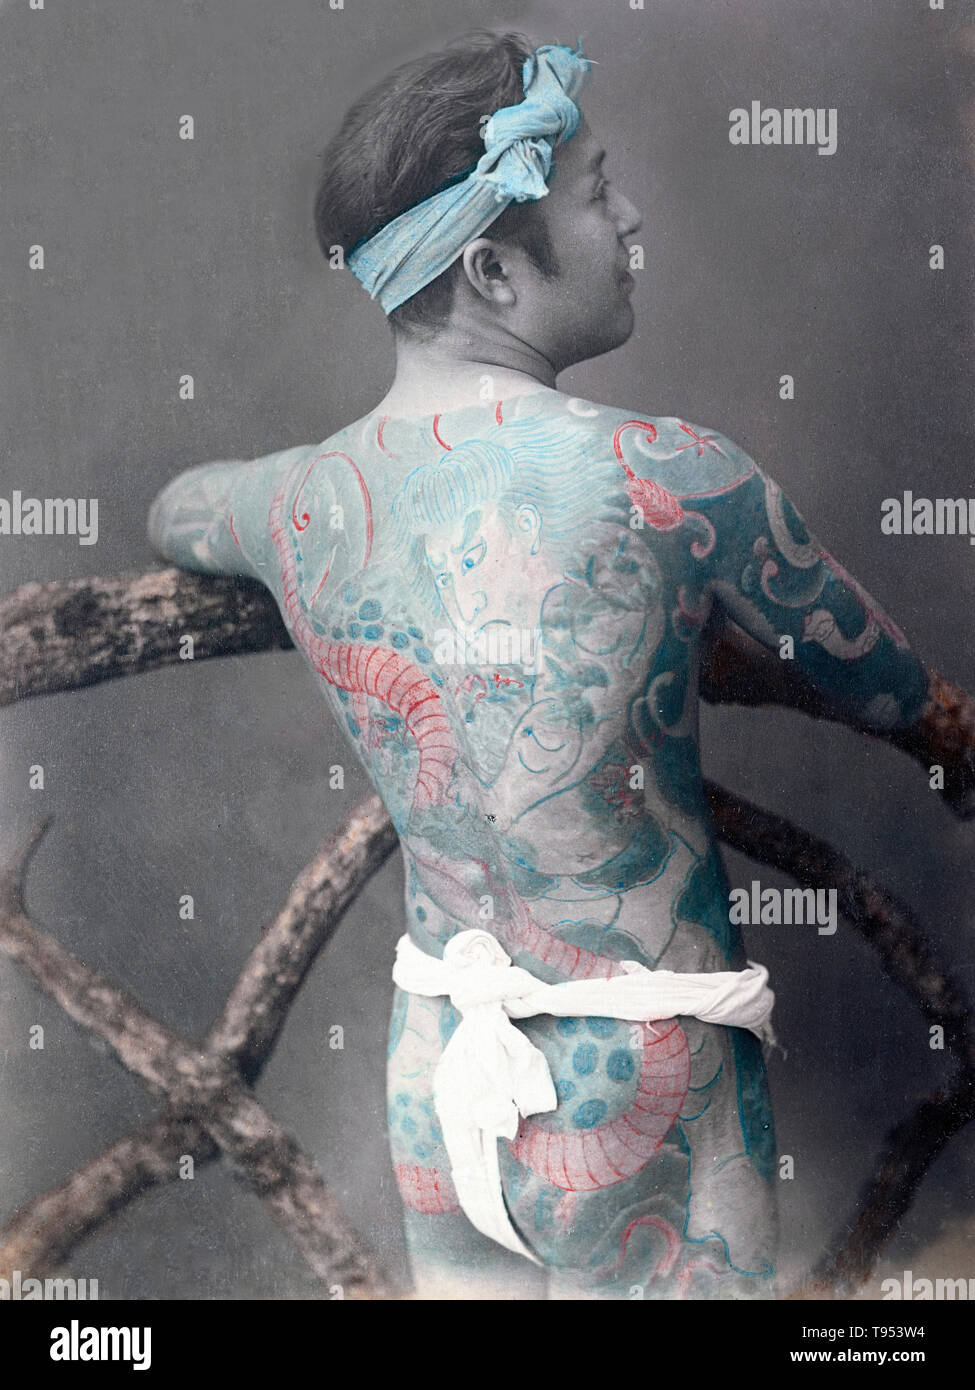 L'homme japonais avec un body tattoo, du c. Années 1870 - années 1890. Kusakabe Kimbei (photographié par japonais, 1841 - 1934, Actif 1880 - vers 1912) ou le baron Raimund von Stillfried (autrichien, 1839 - 1911). À la main, à l'albumine argentique. Banque D'Images